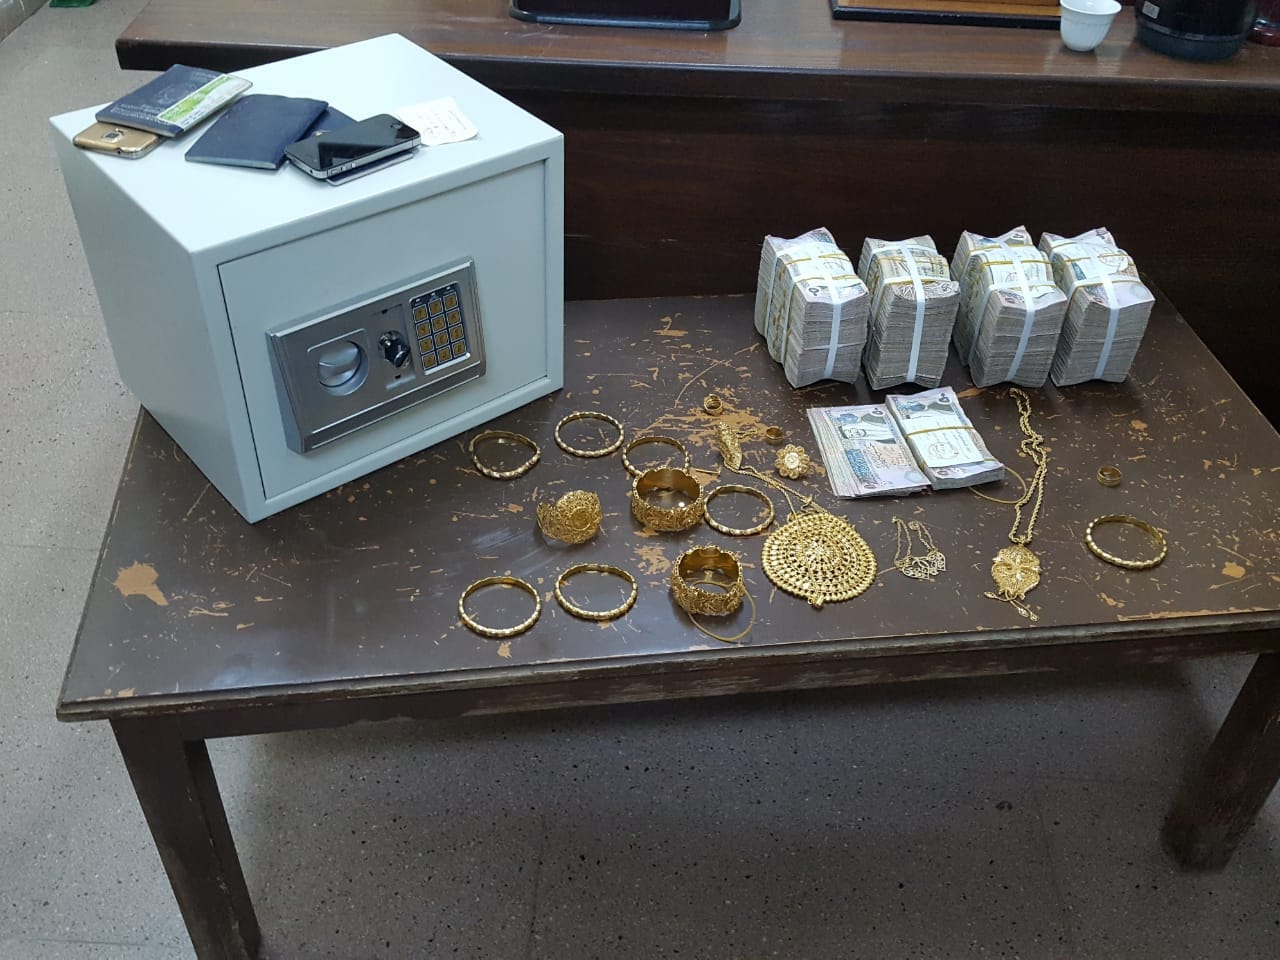  القبض على شخصين اثناء  سرقة (206) الاف دينار ومصاغ ذهبي بقيمة (20) الف دينار  